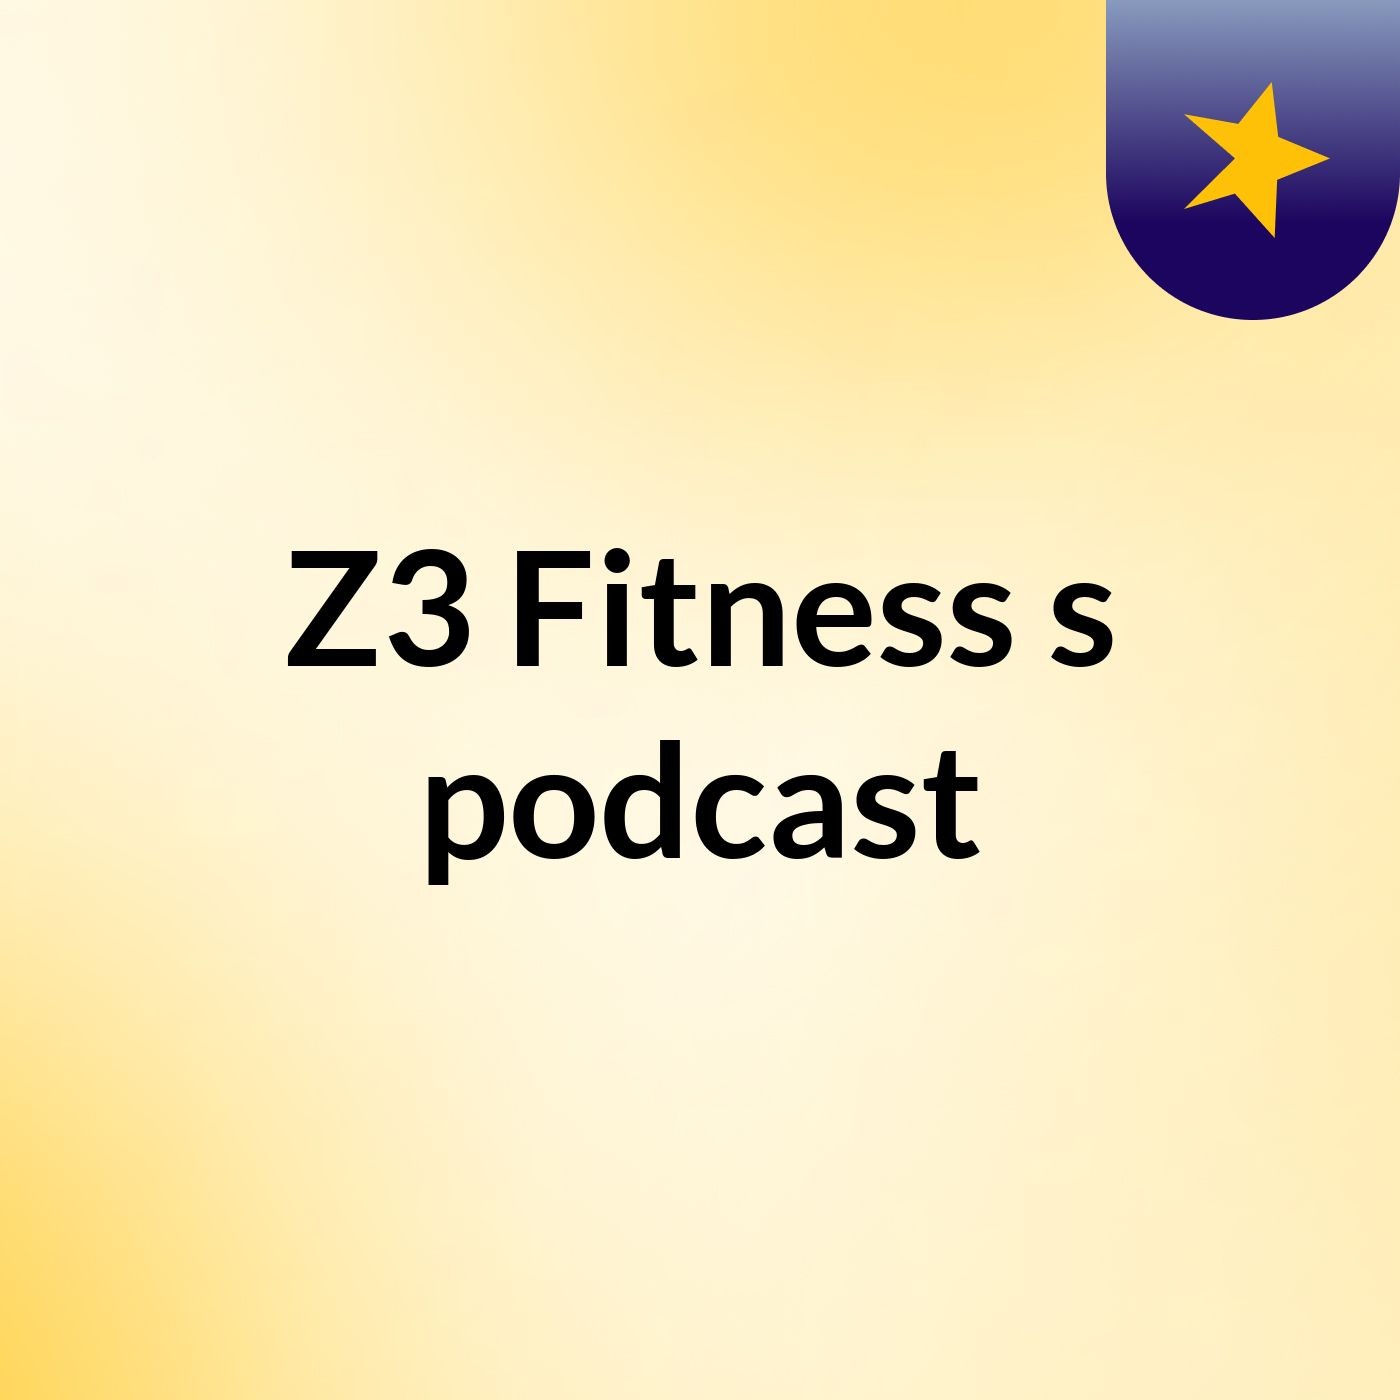 Z3 Fitness's podcast